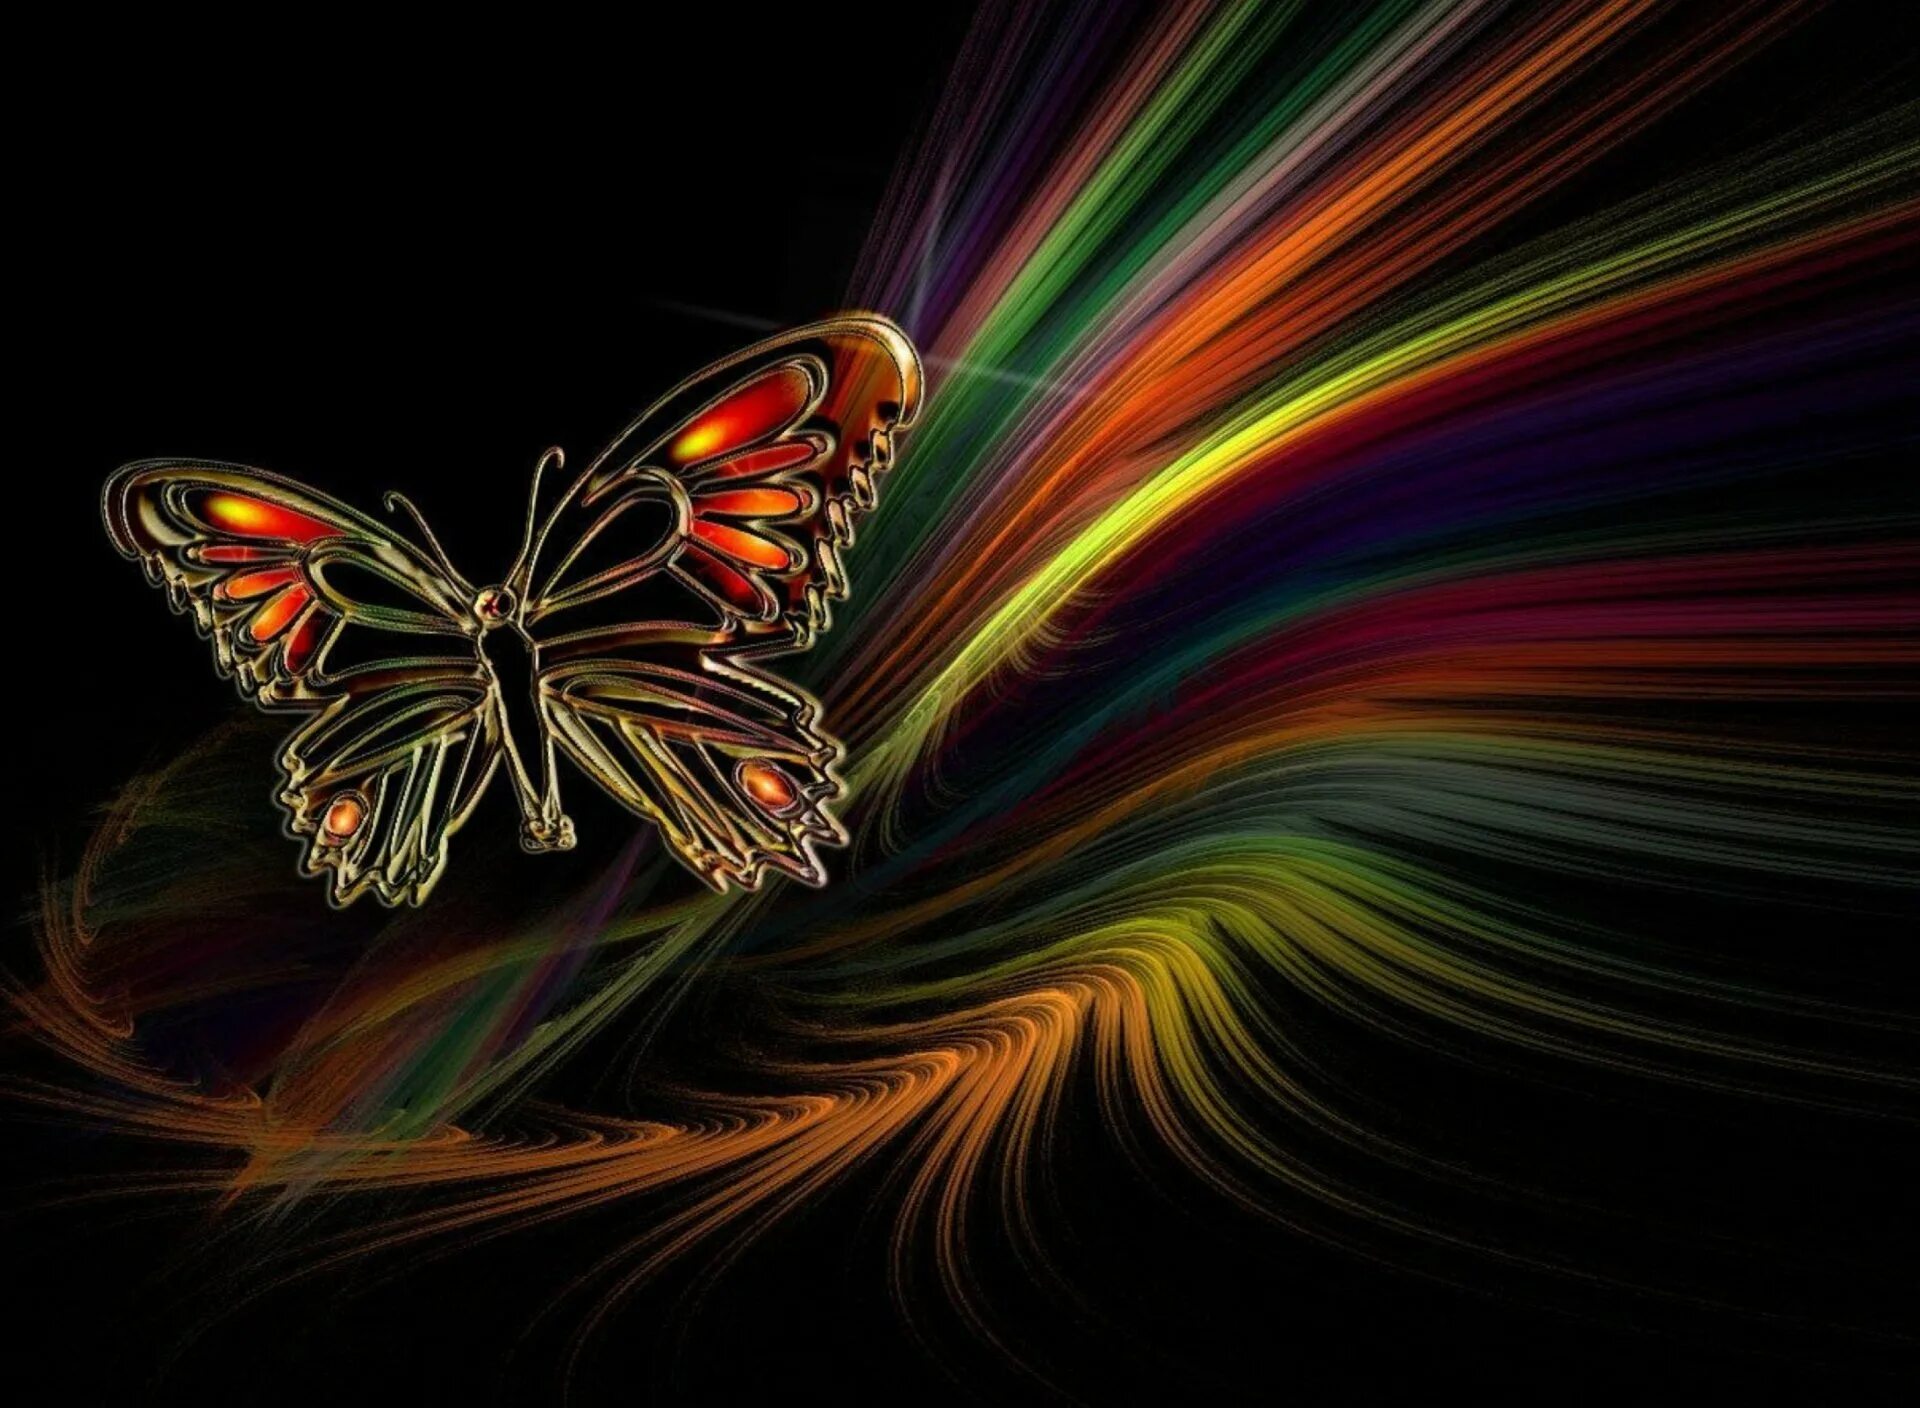 Бесплатные картинки на заставку телефона. Бабочки. Бабочка абстракция. Заставка бабочки. Яркие обои.